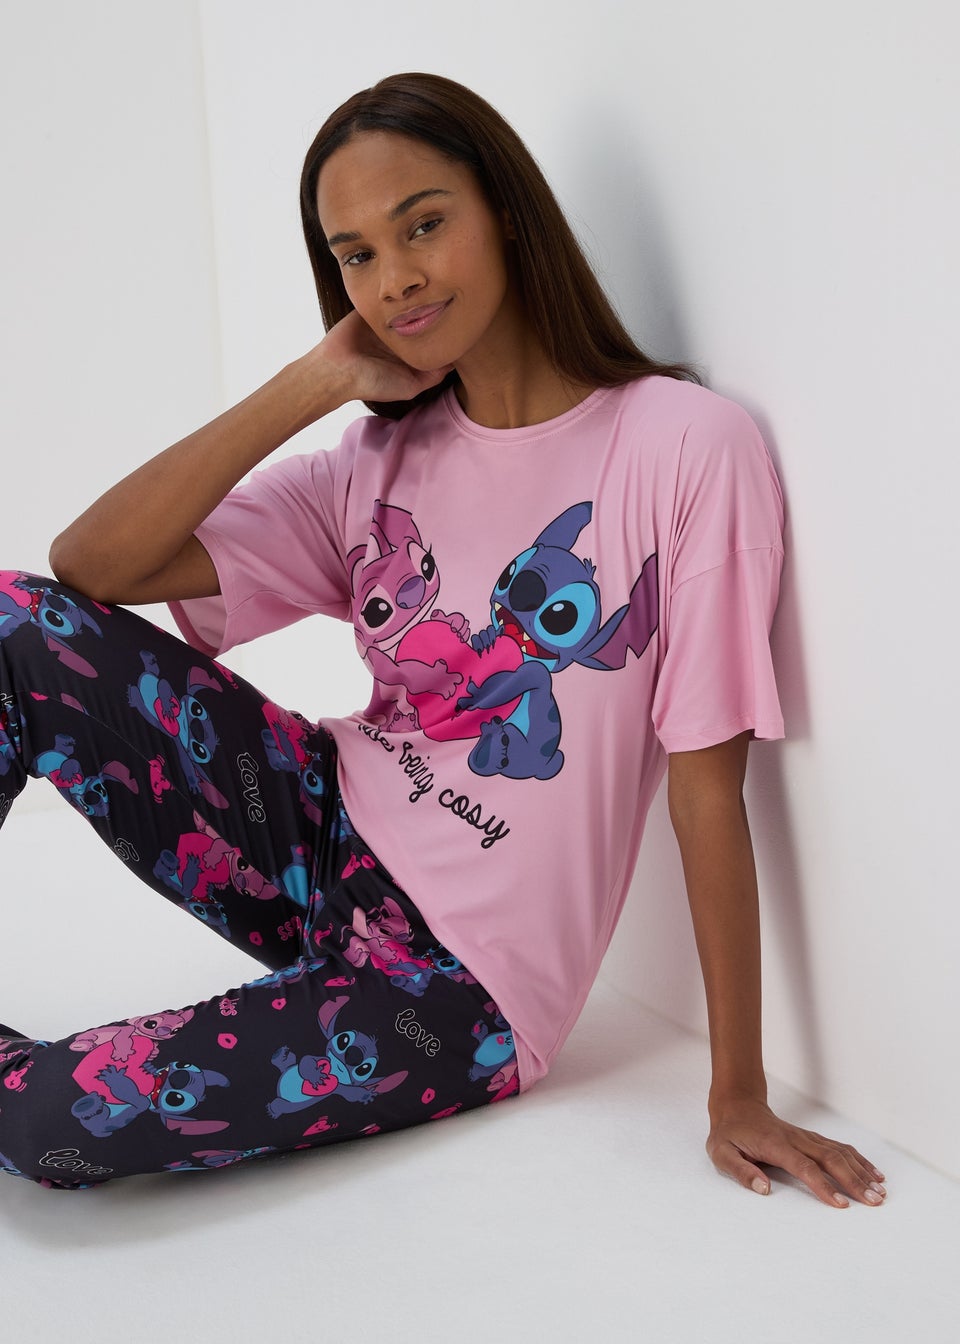 Disney Pink Lilo & Stitch Pyjama Set